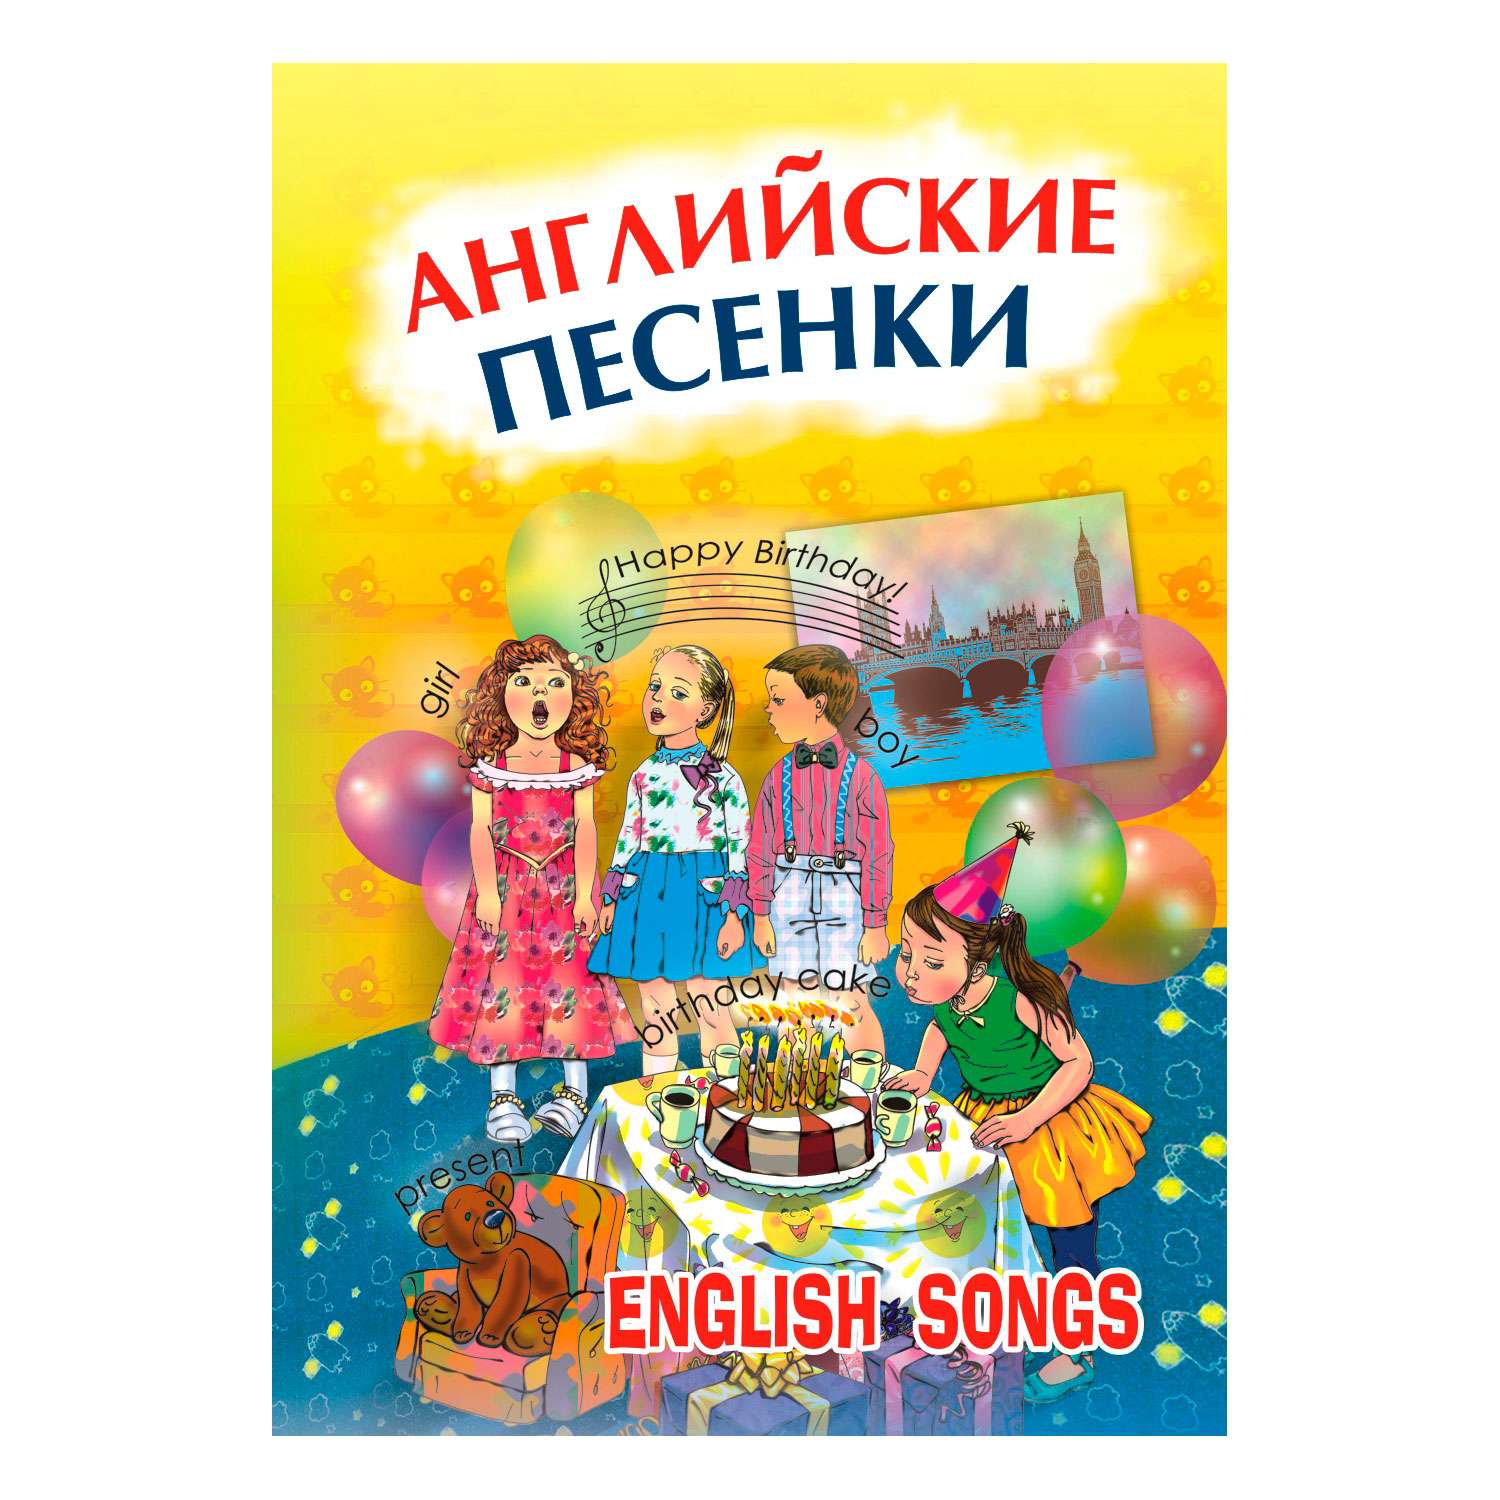 Английские песни счастливо. Английские песенки. Песня на английском. Английские песни. Издательство Мим эксперт английские песенки.